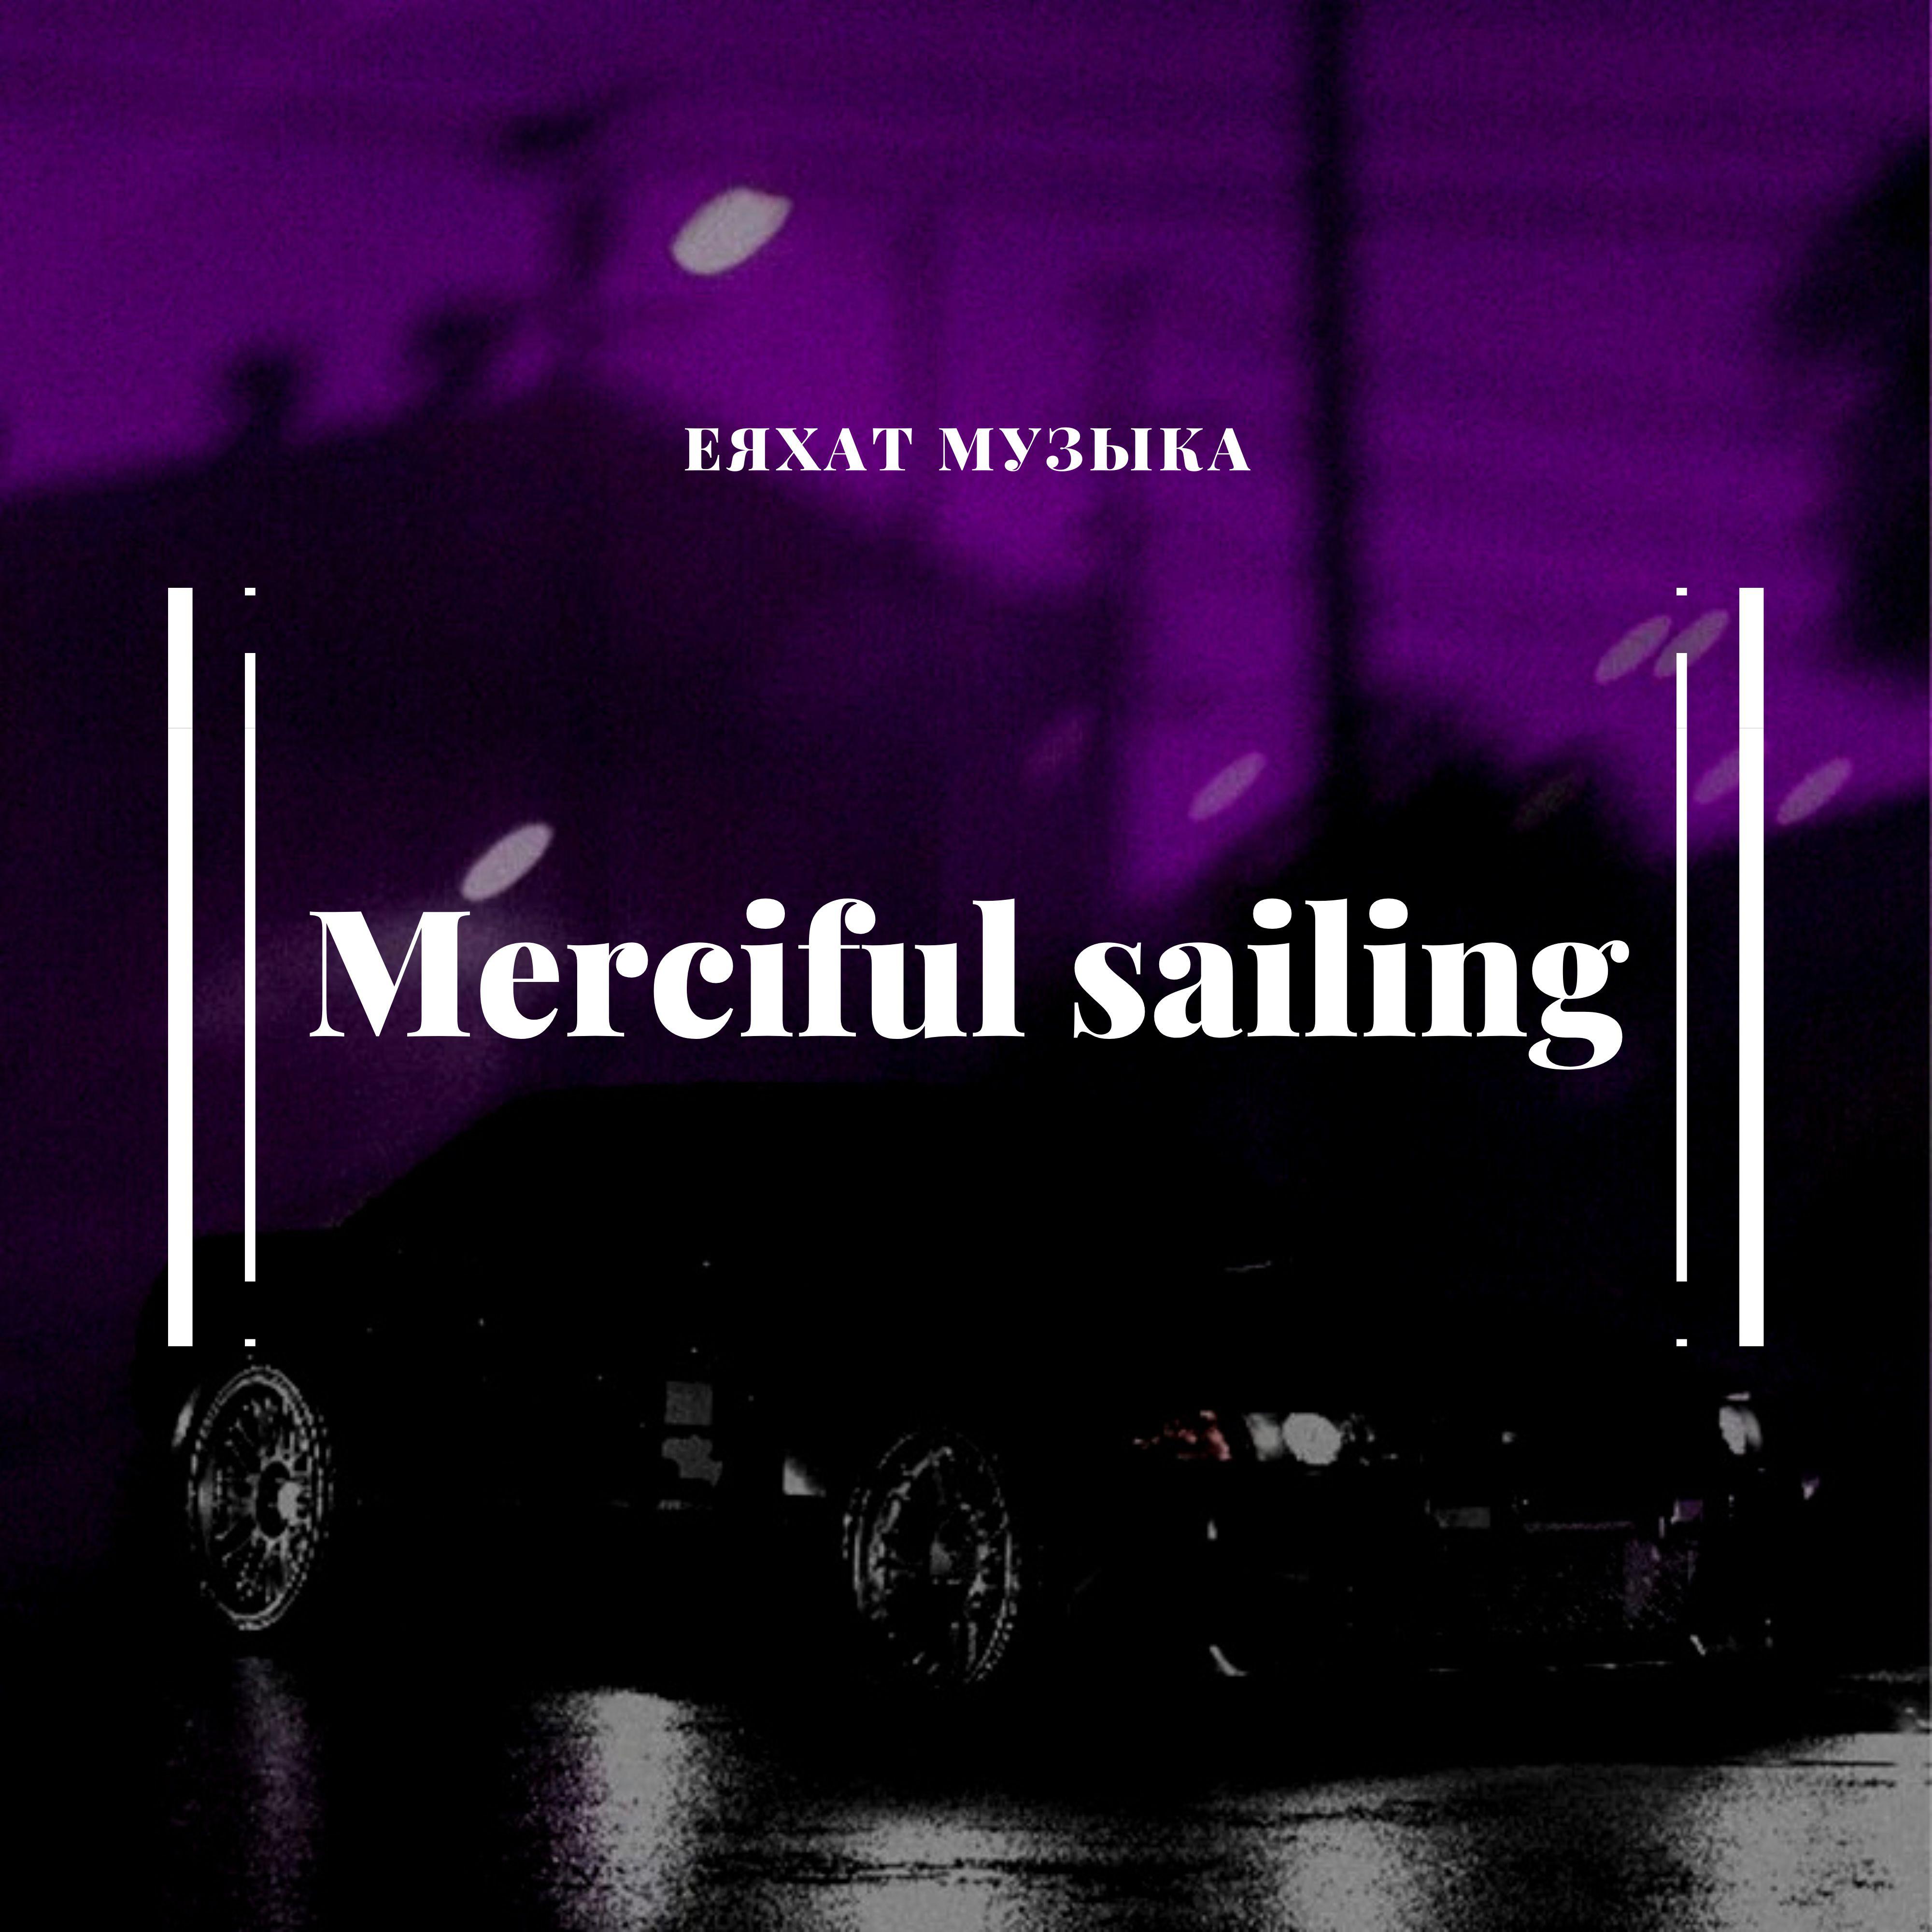 еяхат музыка - Merciful sailing (Explicit)